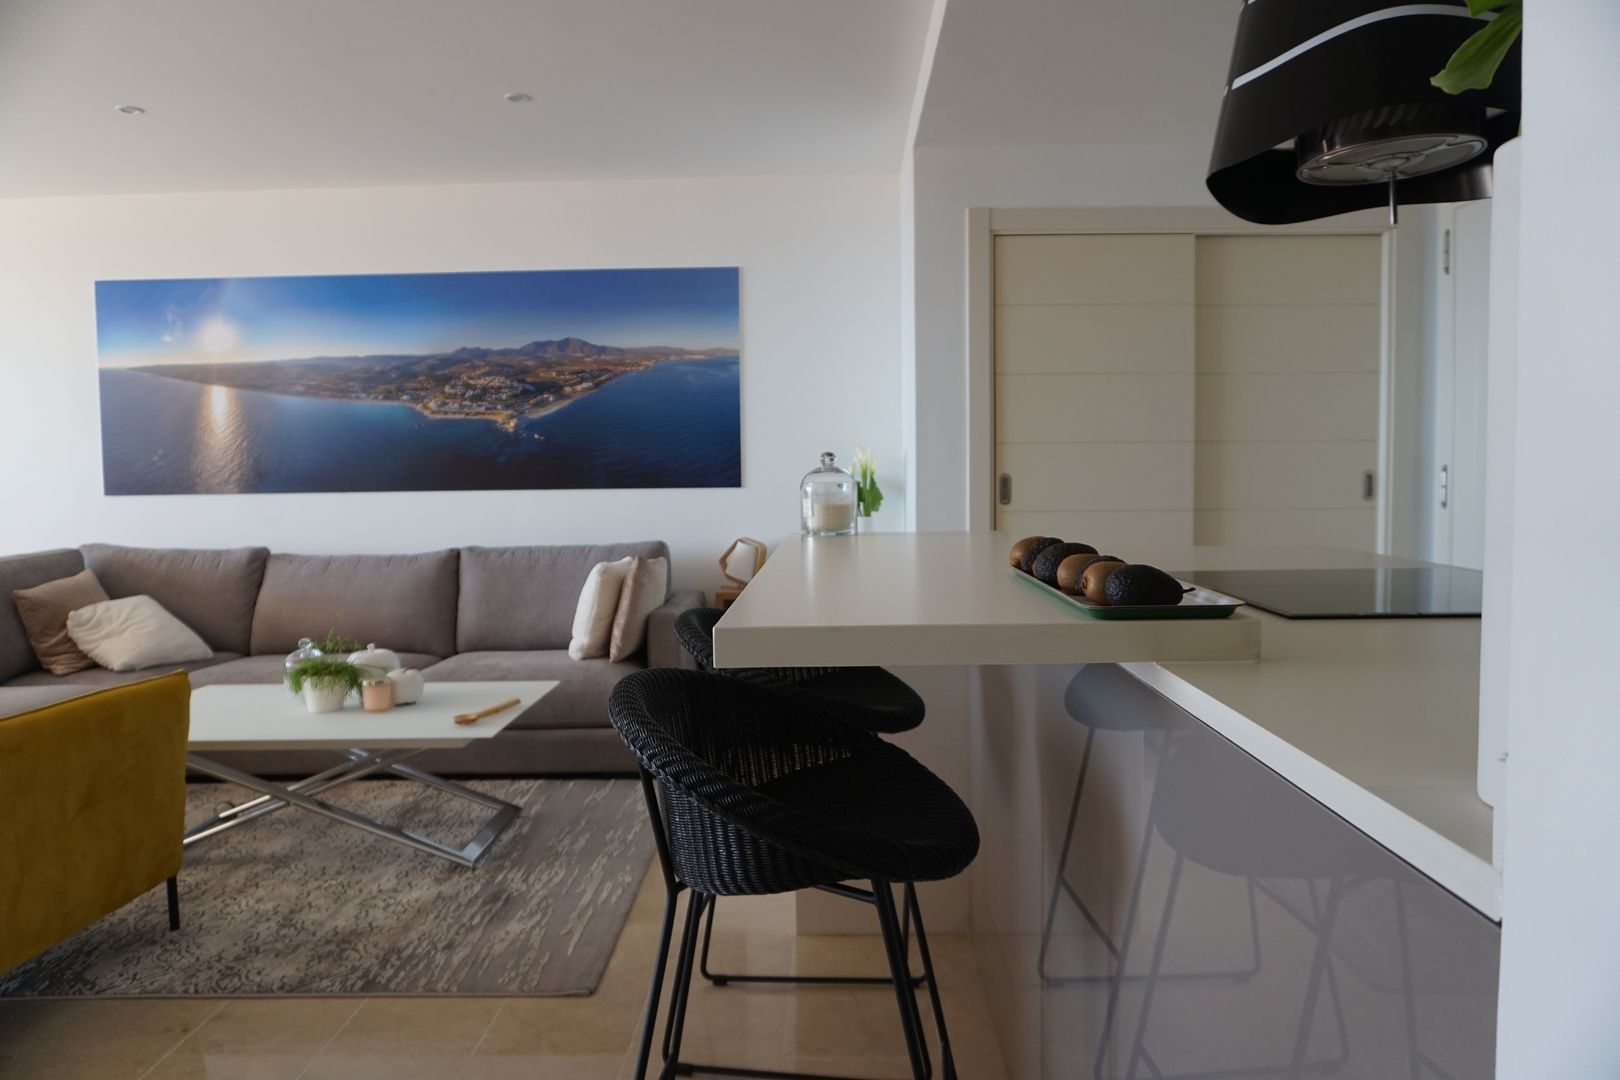 Proyecto e instalación de cocina moderna abierta al salón en Málaga, Decodan - Estudio de cocinas y armarios en Estepona y Marbella Decodan - Estudio de cocinas y armarios en Estepona y Marbella 빌트인 주방